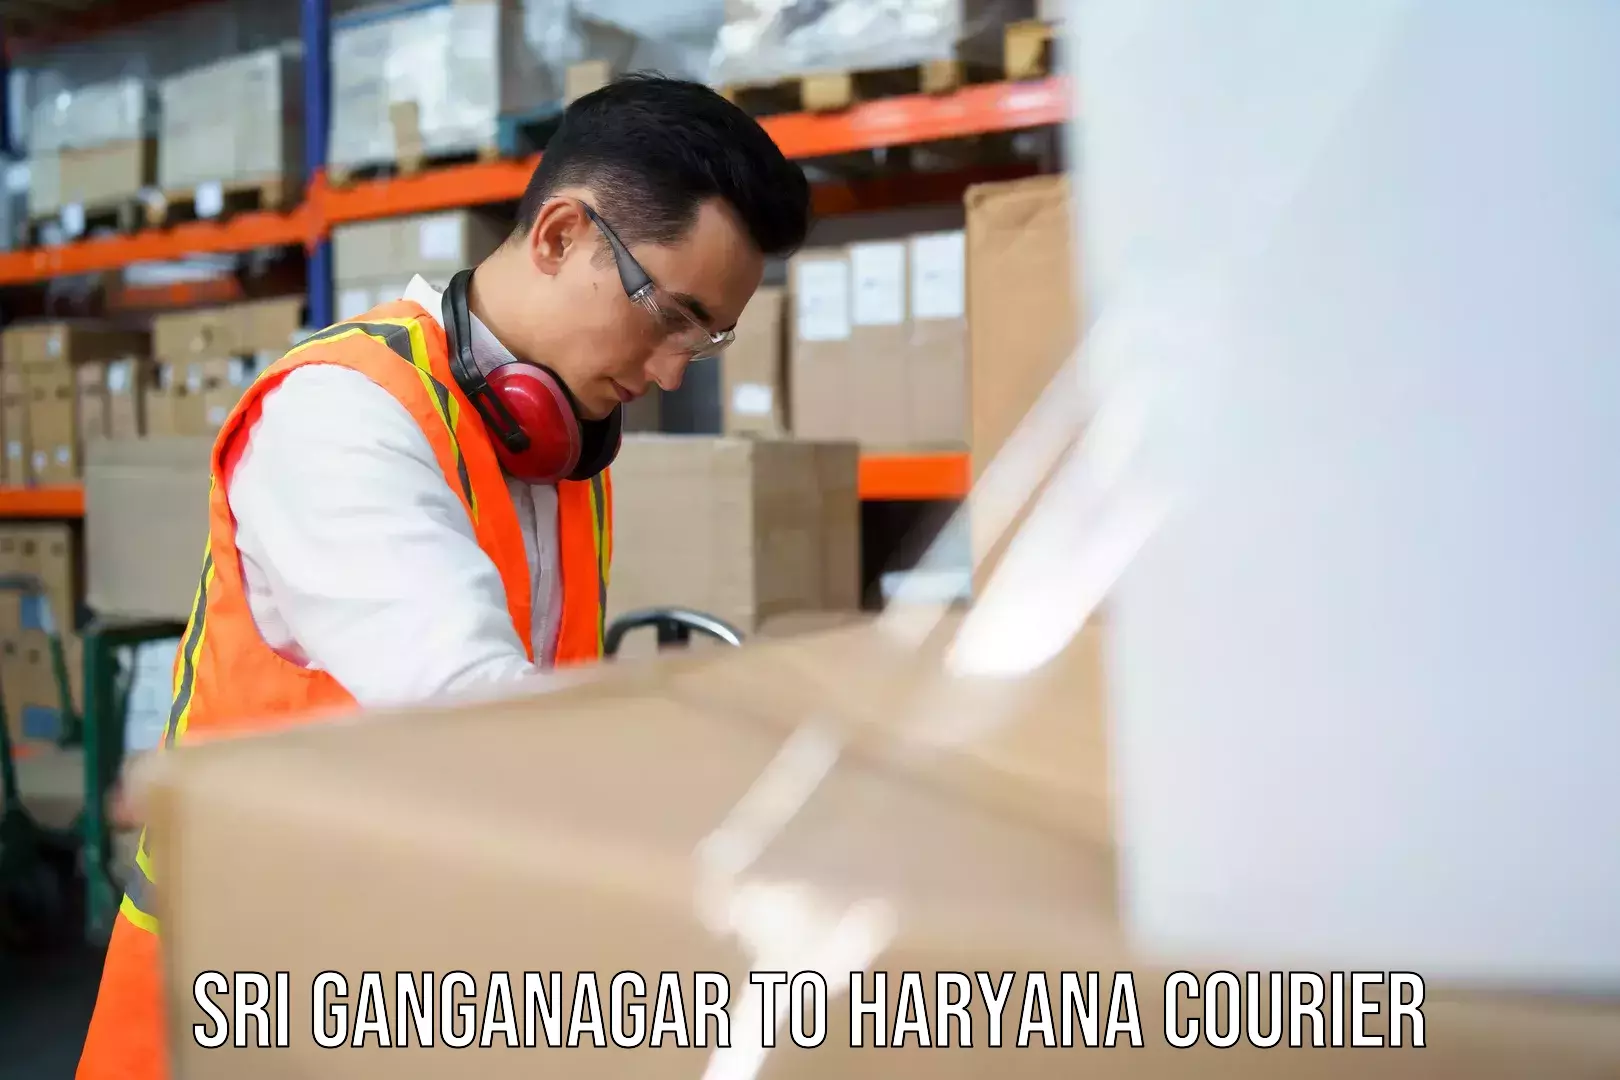 Next-day delivery options Sri Ganganagar to Panchkula